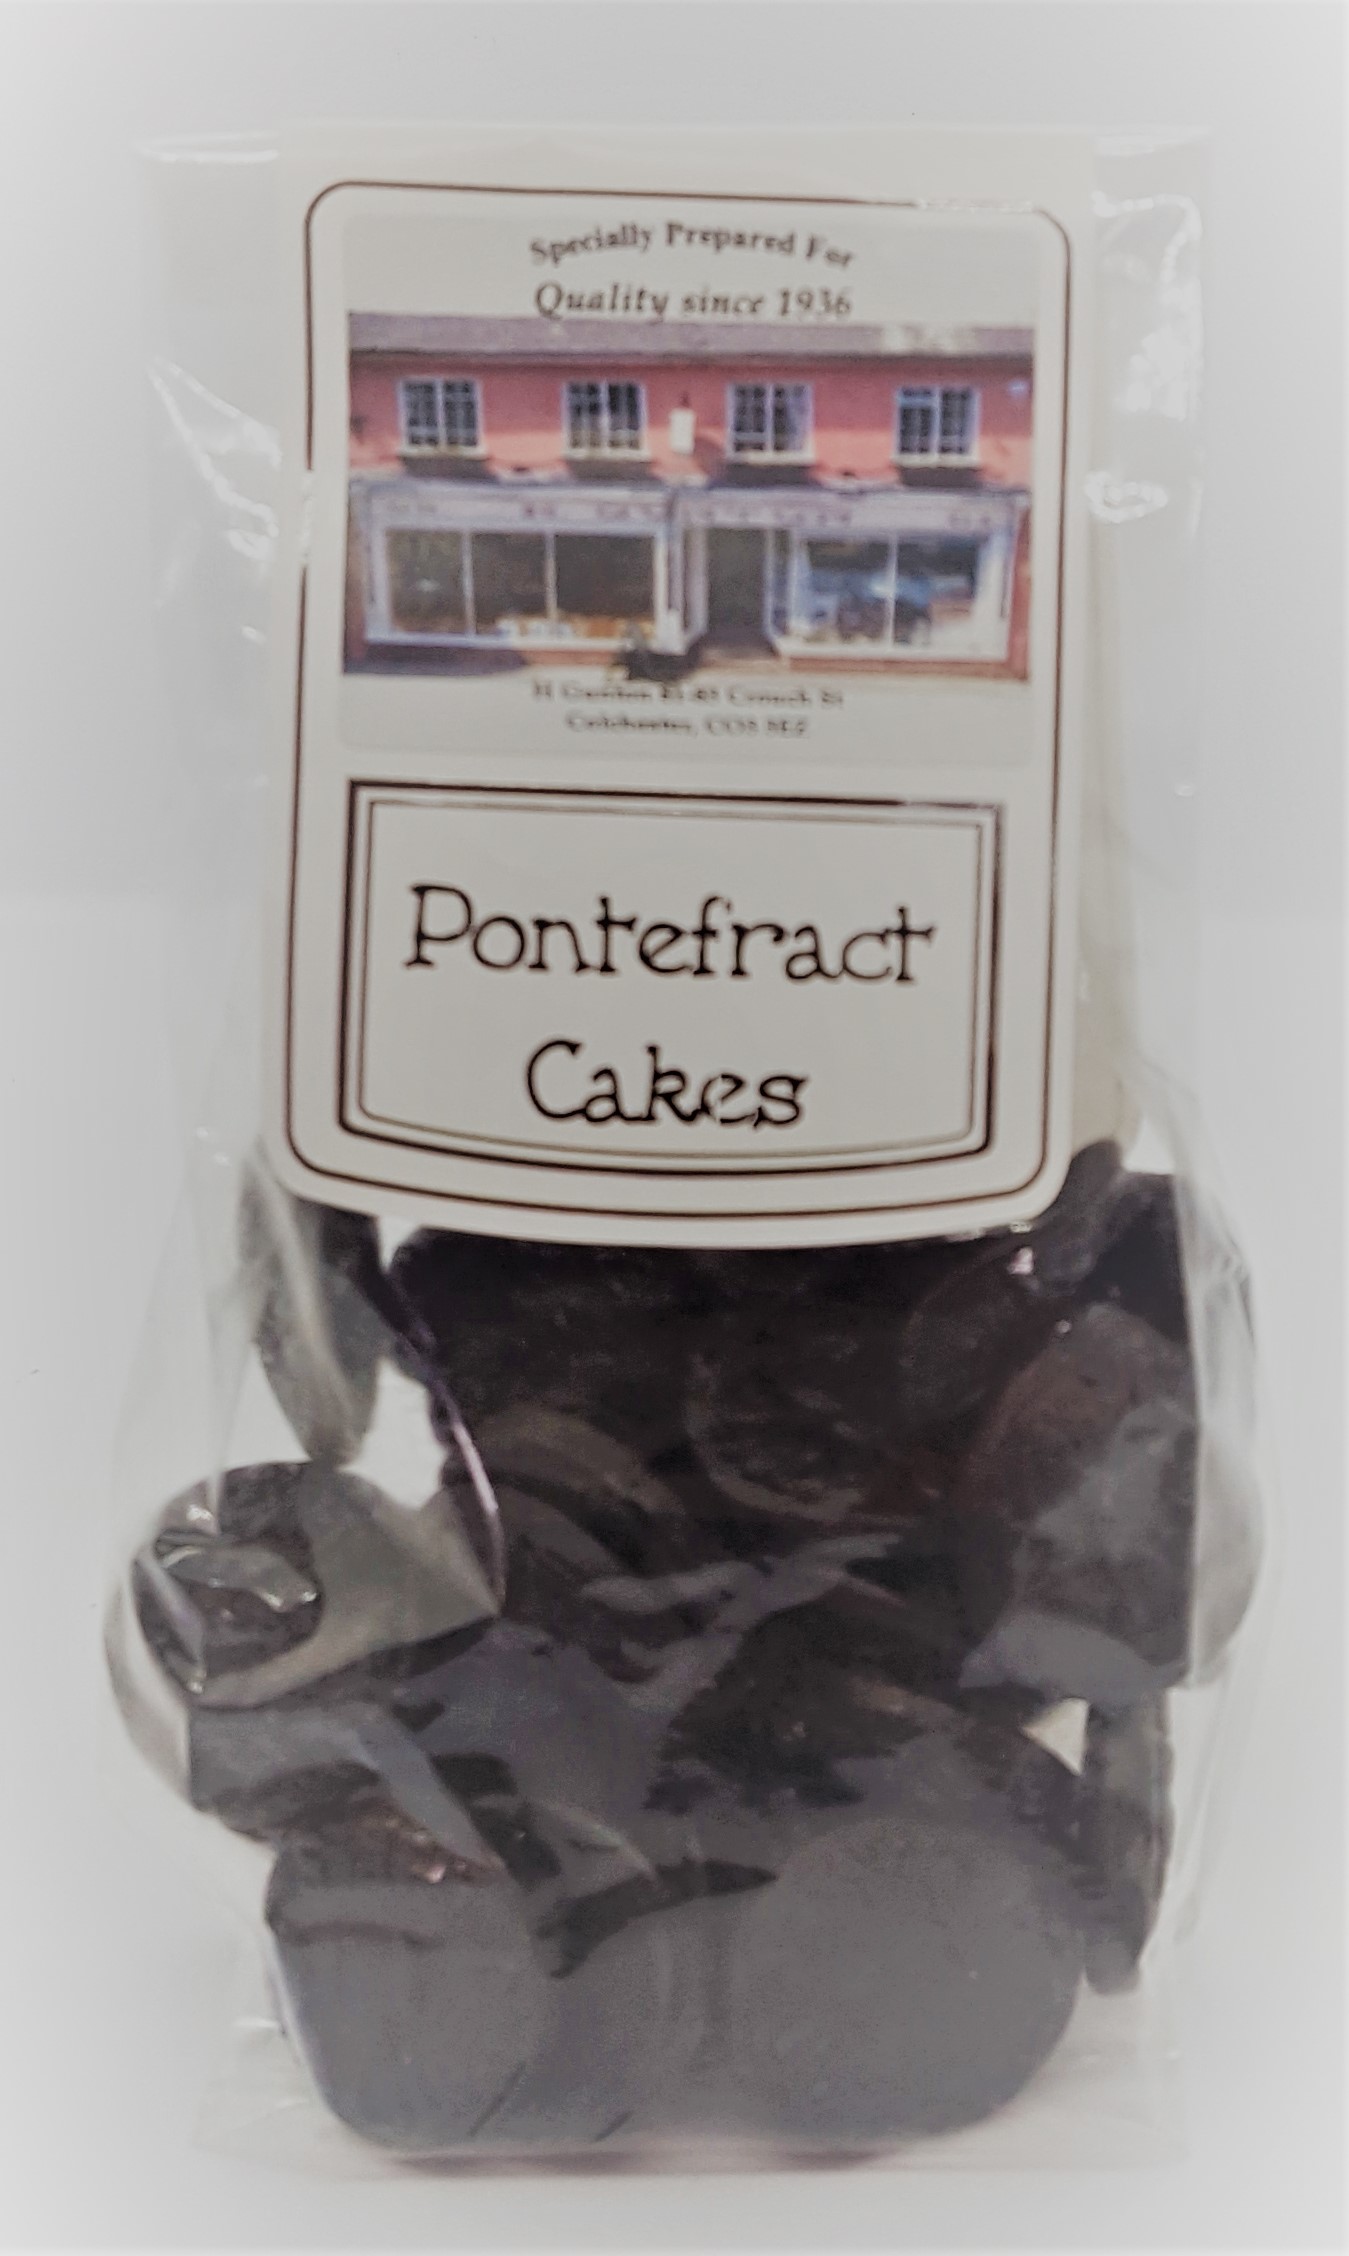 Pontefract Cakes